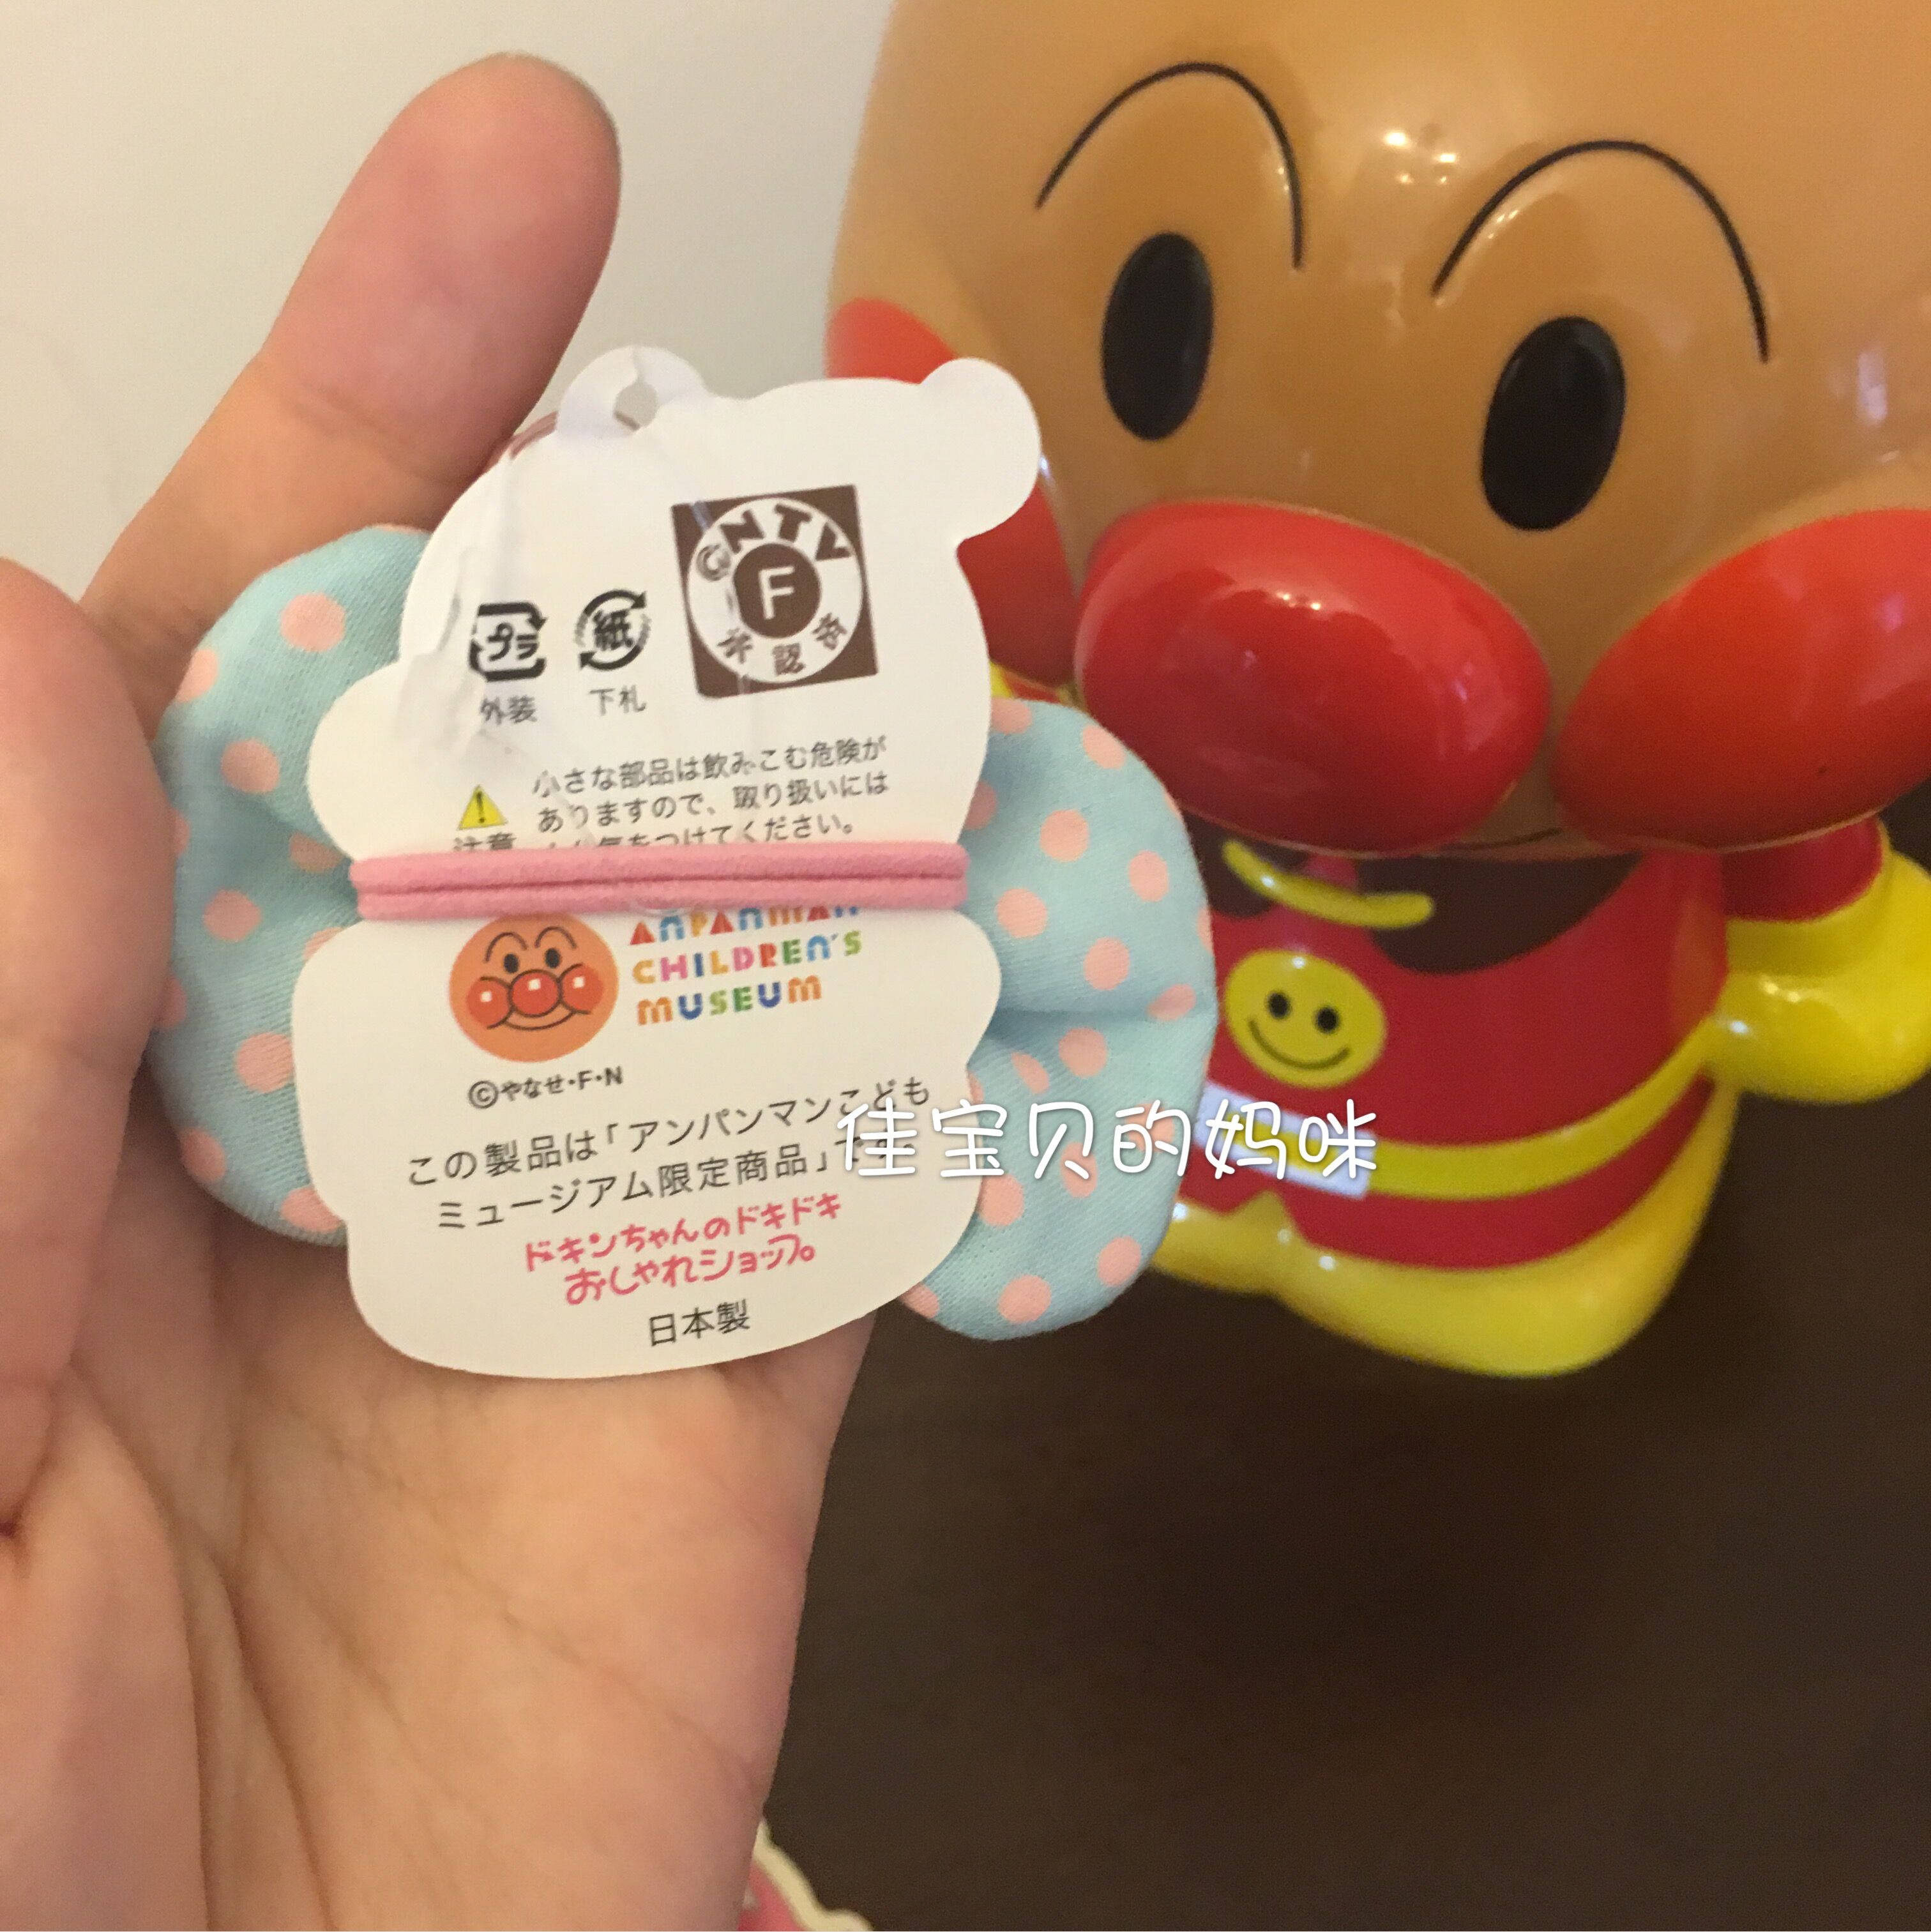 日本进口面包超人博物馆限定款儿童发饰日式粉色弹力发绳皮筋发夹